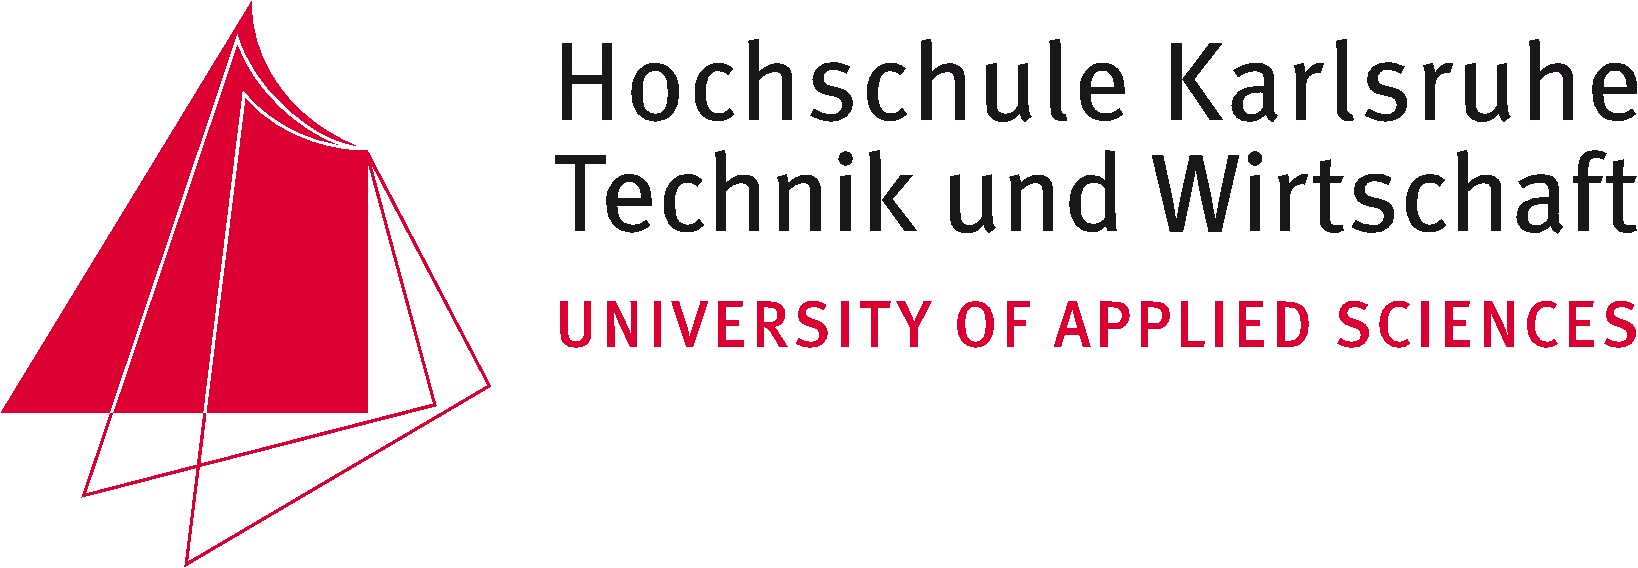 Hochschule Karlsruhe